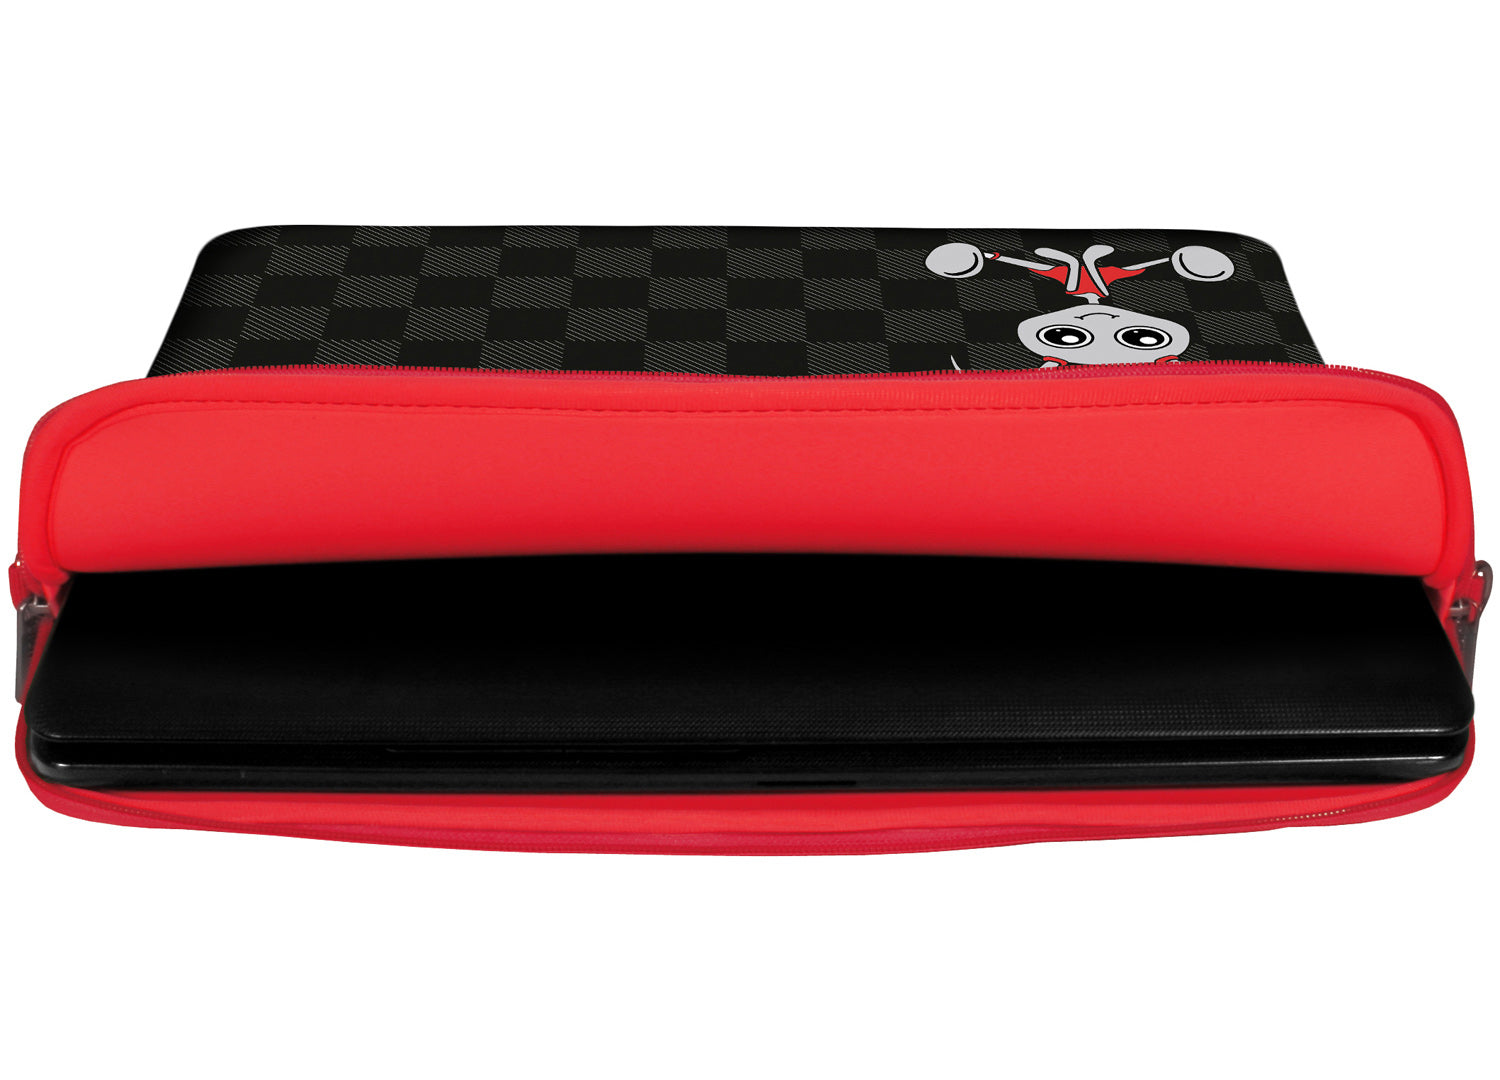 Innenansicht mit Schutzlippen der LS160 Filly Designer Tasche für Laptop in rot aus wasserabweisendem Neopren